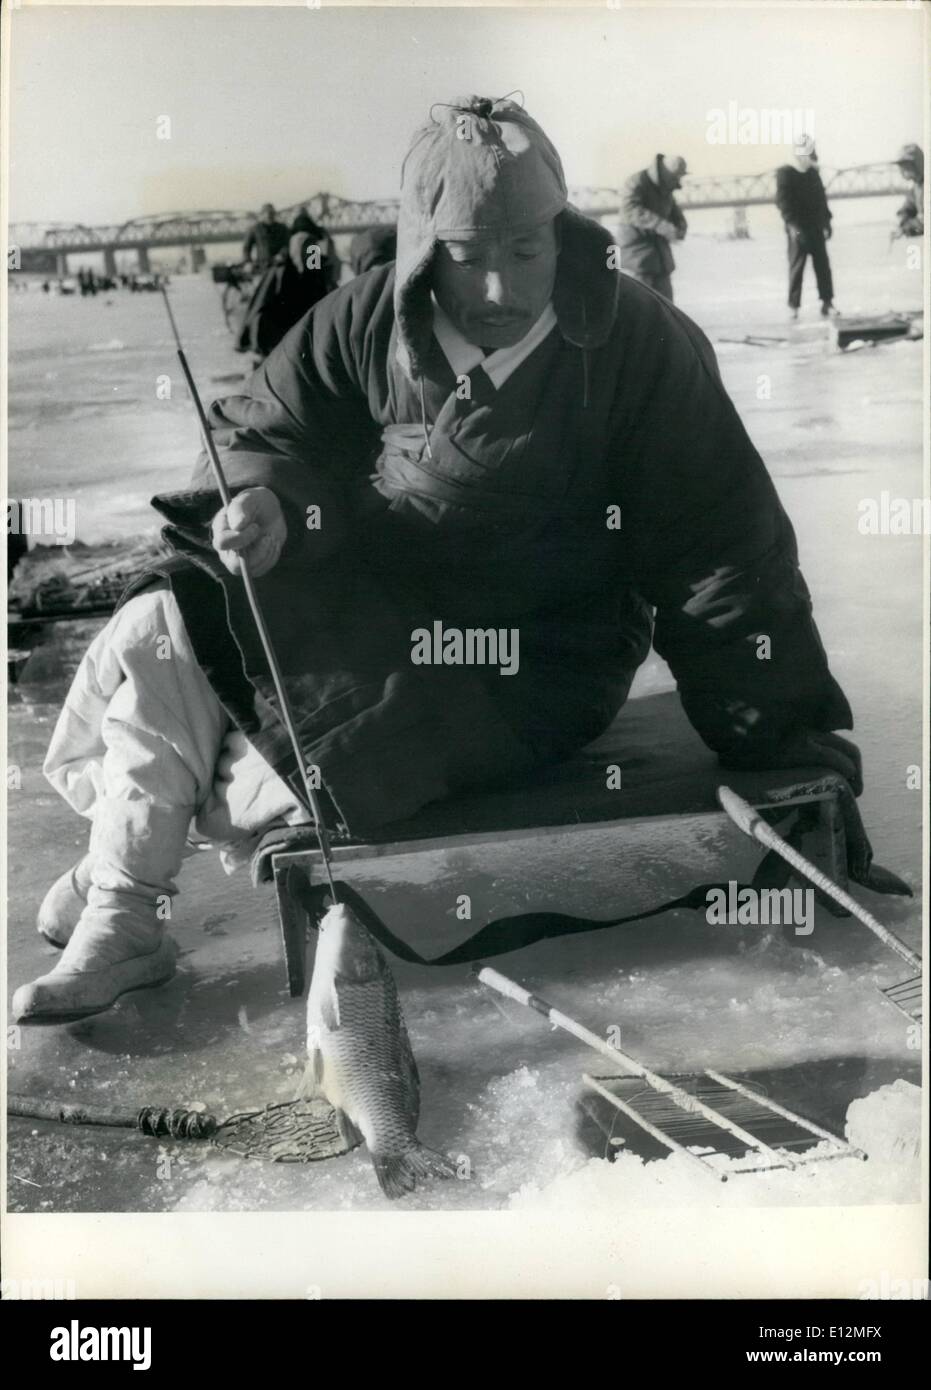 Febrero 24, 2012 - Un pescador coreano respecto a una multa la carpa que acaba gaffed desde su agujero de hielo. Foto de stock